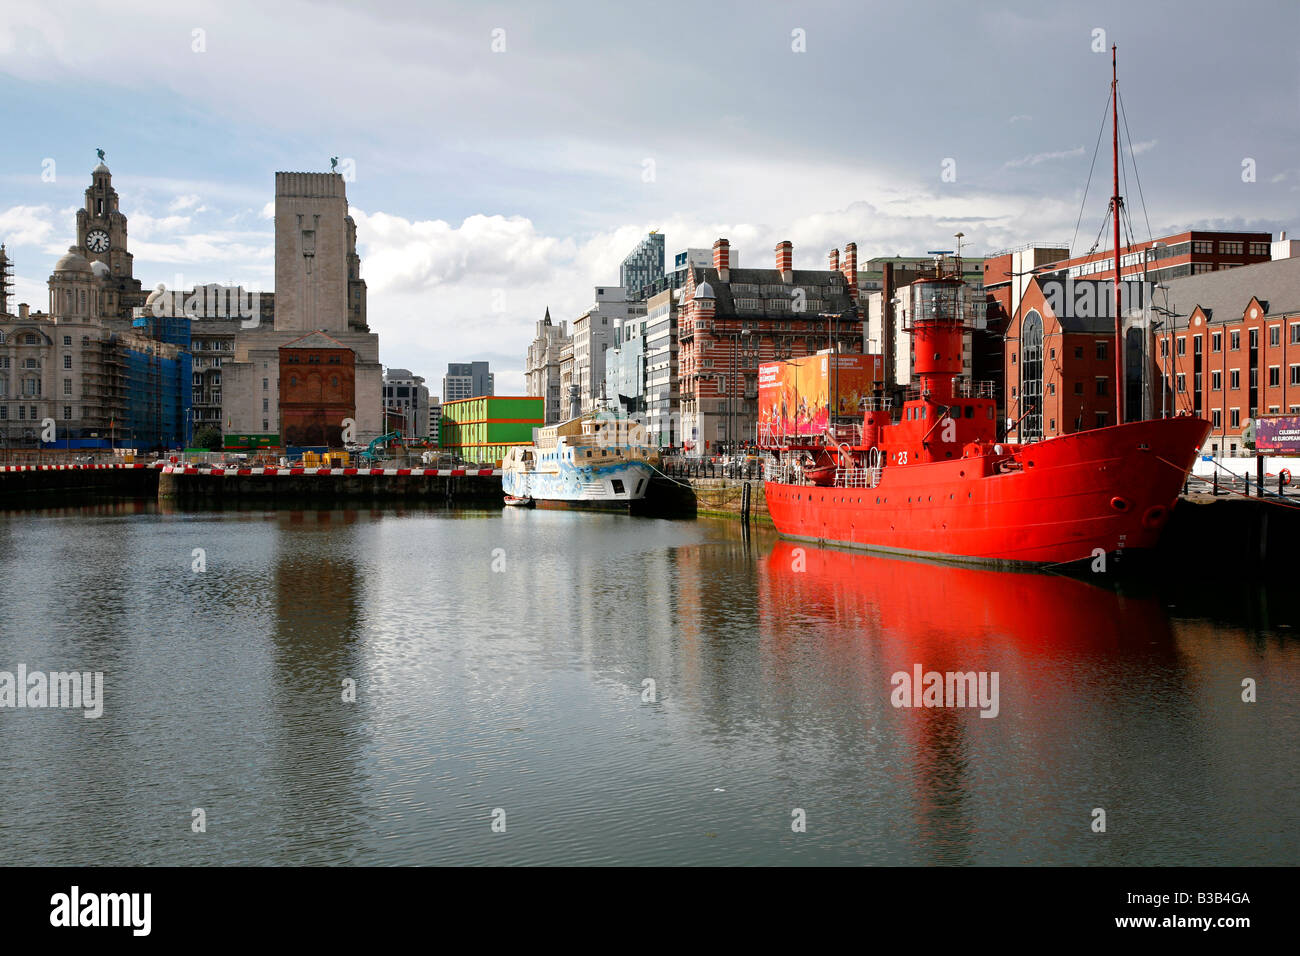 Juli 2008 - die Rotlicht-Schiff am Dock neben Albert canning dock mit der Leber, die Gebäude im Hintergrund Liverpool England Stockfoto